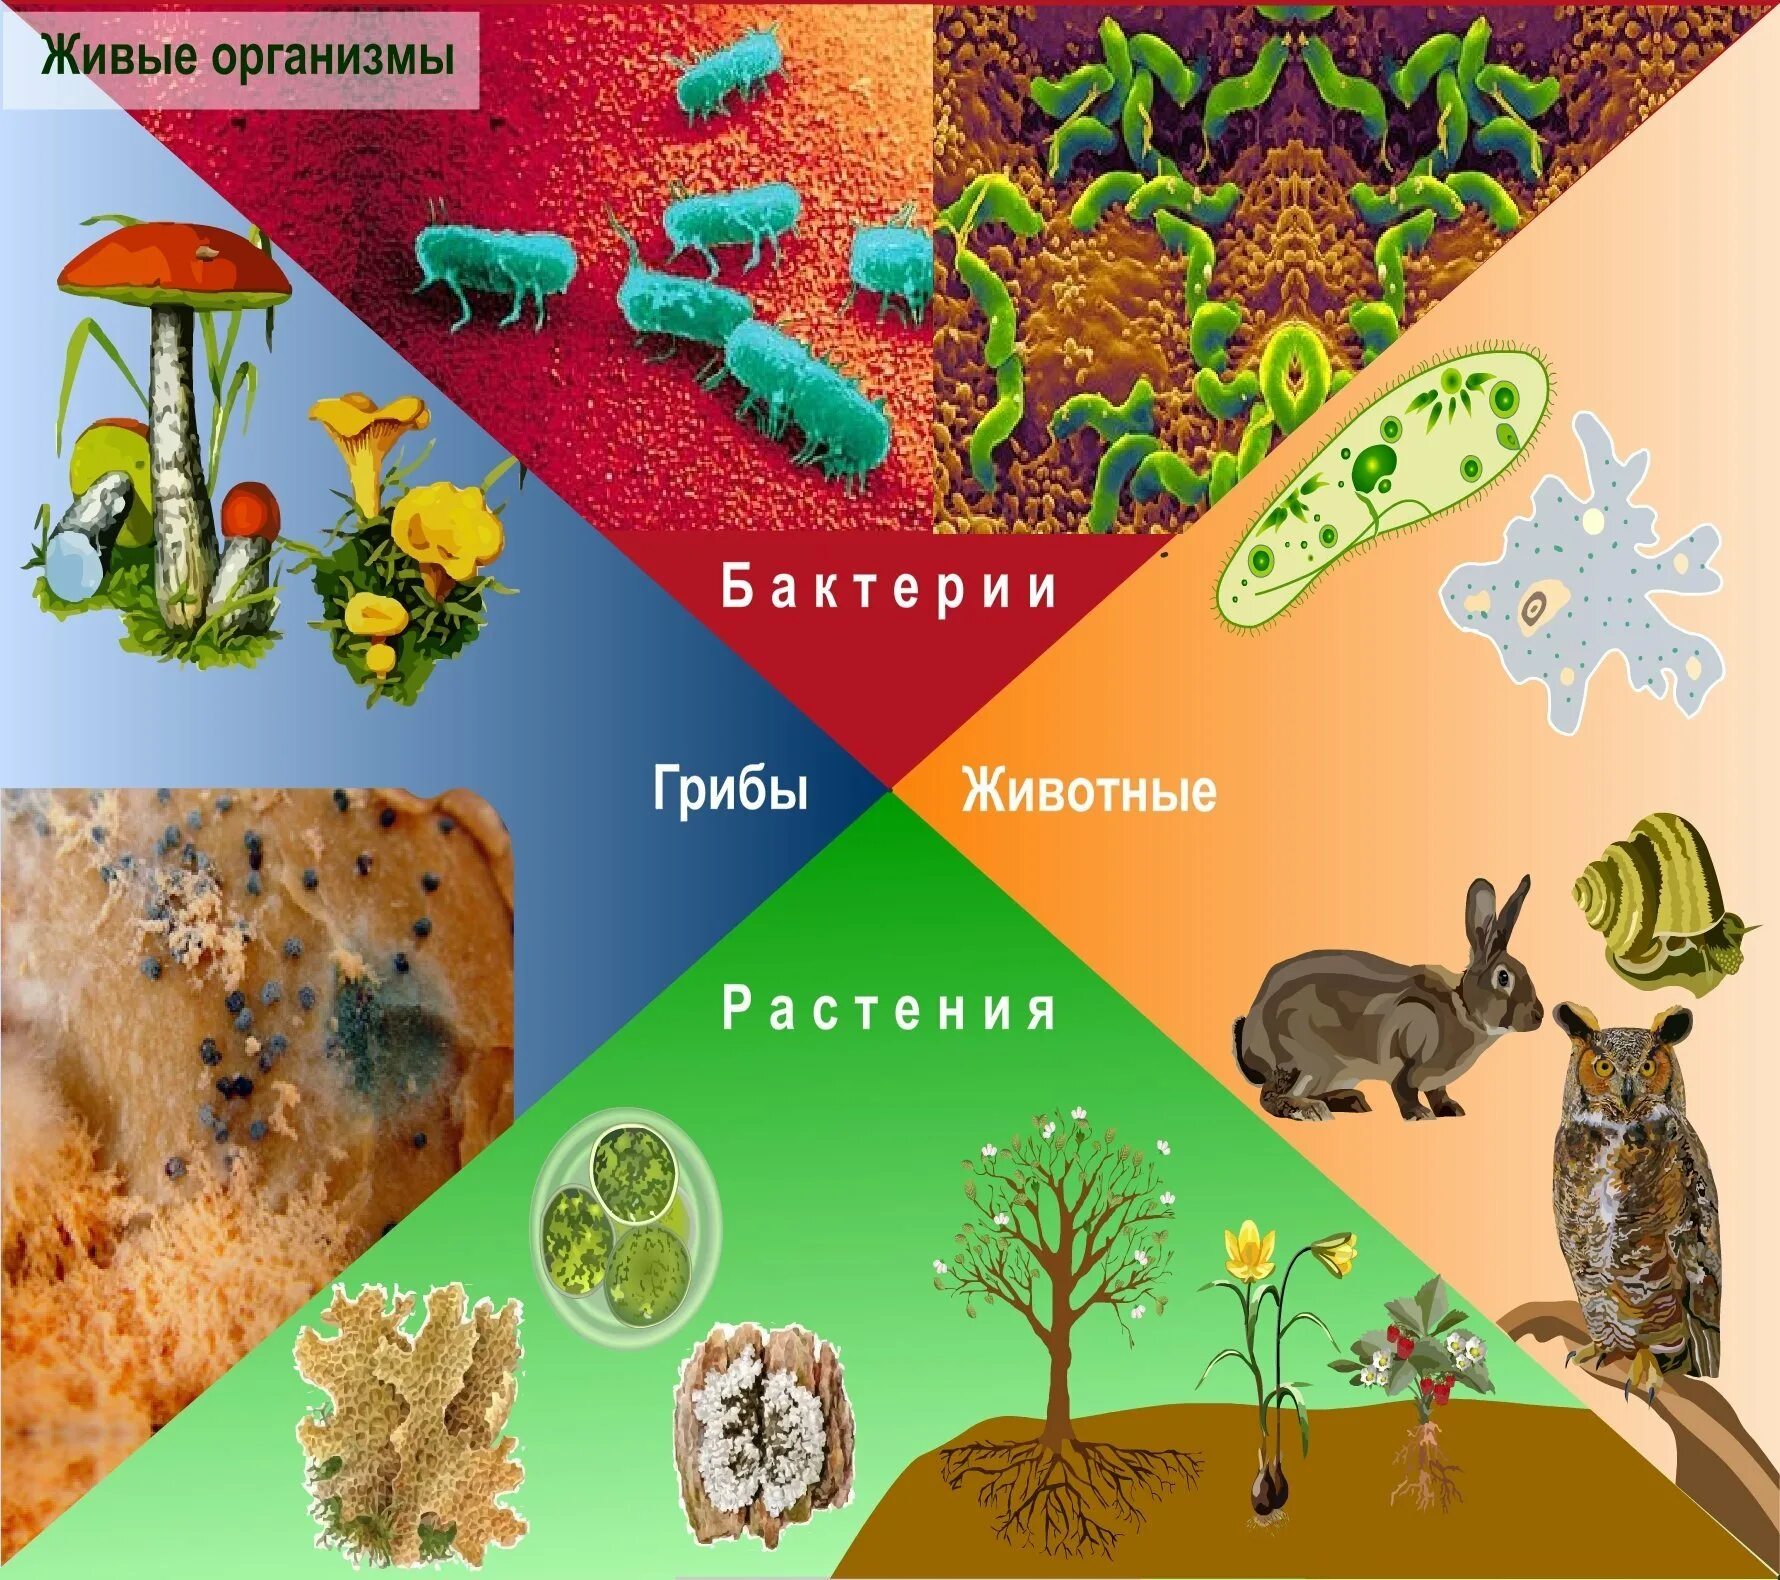 Многообразие организмов на нашей планете. Живые организмы. Живые организмы биология. Биологическое разнообразие живых организмов. Живый е существа организмы.